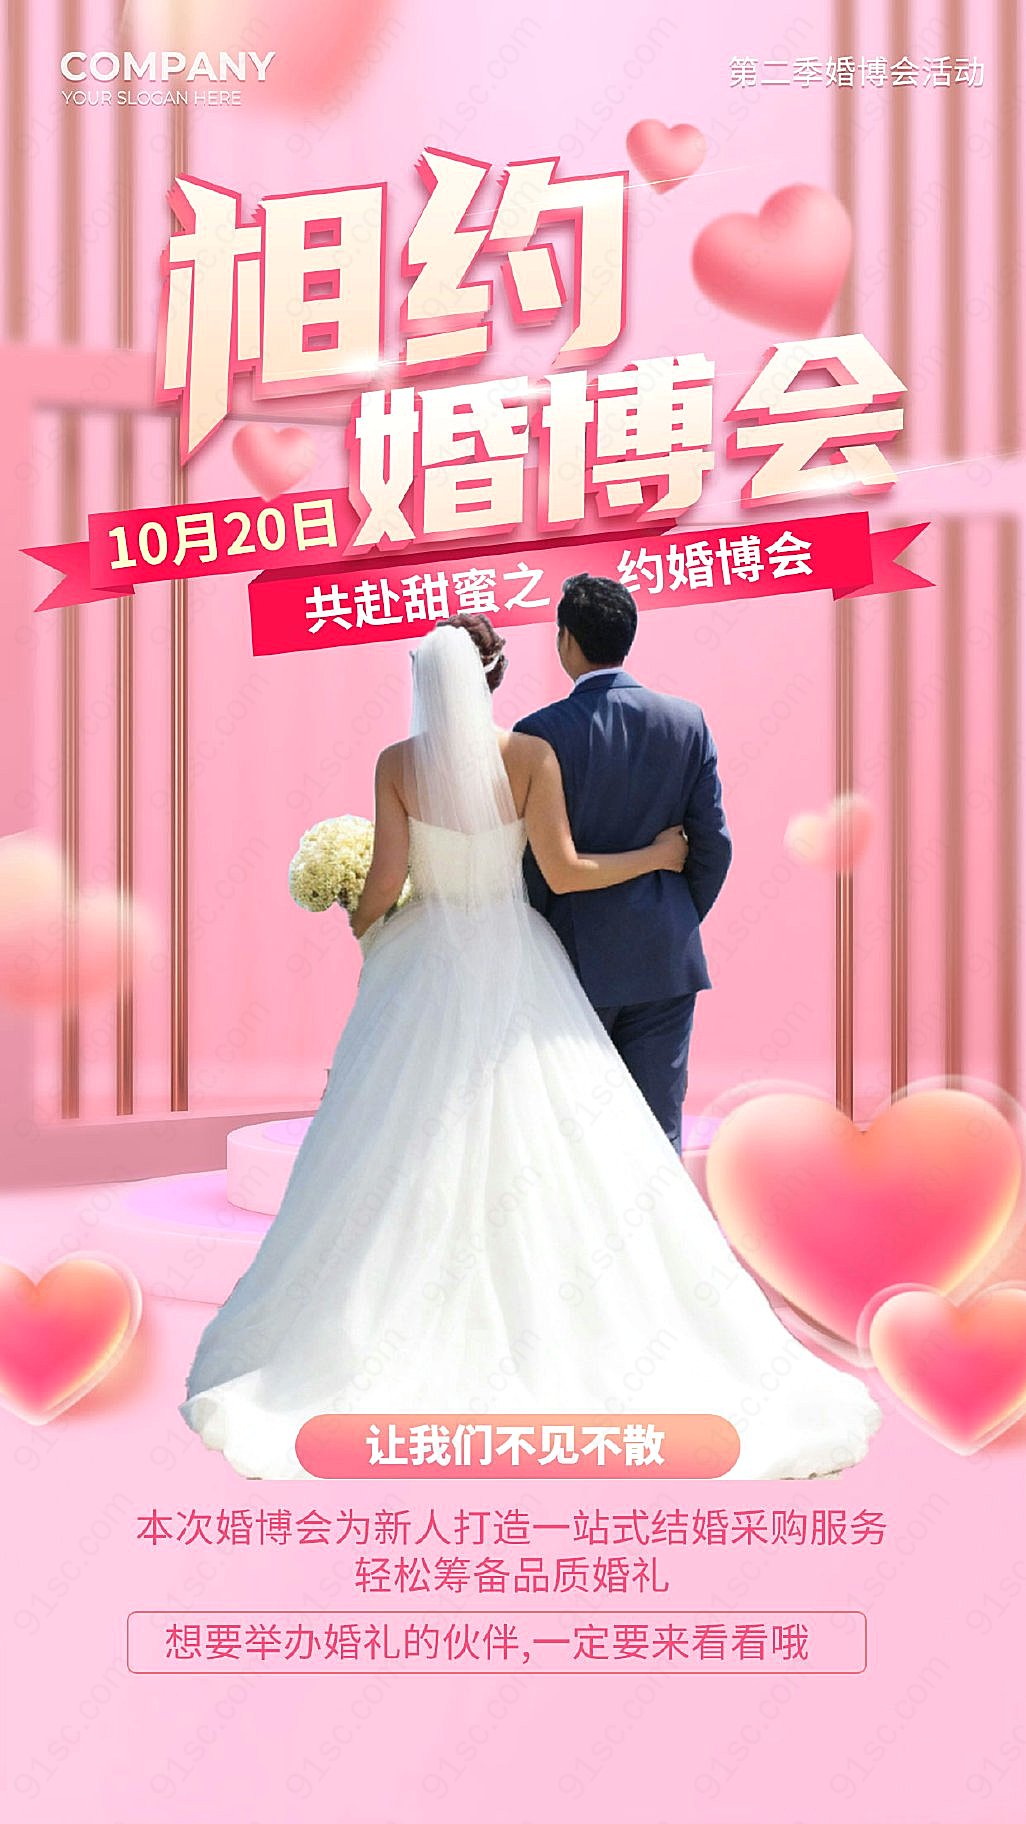 粉红背景引人注目的婚博会宣传手机海报新媒体用图下载